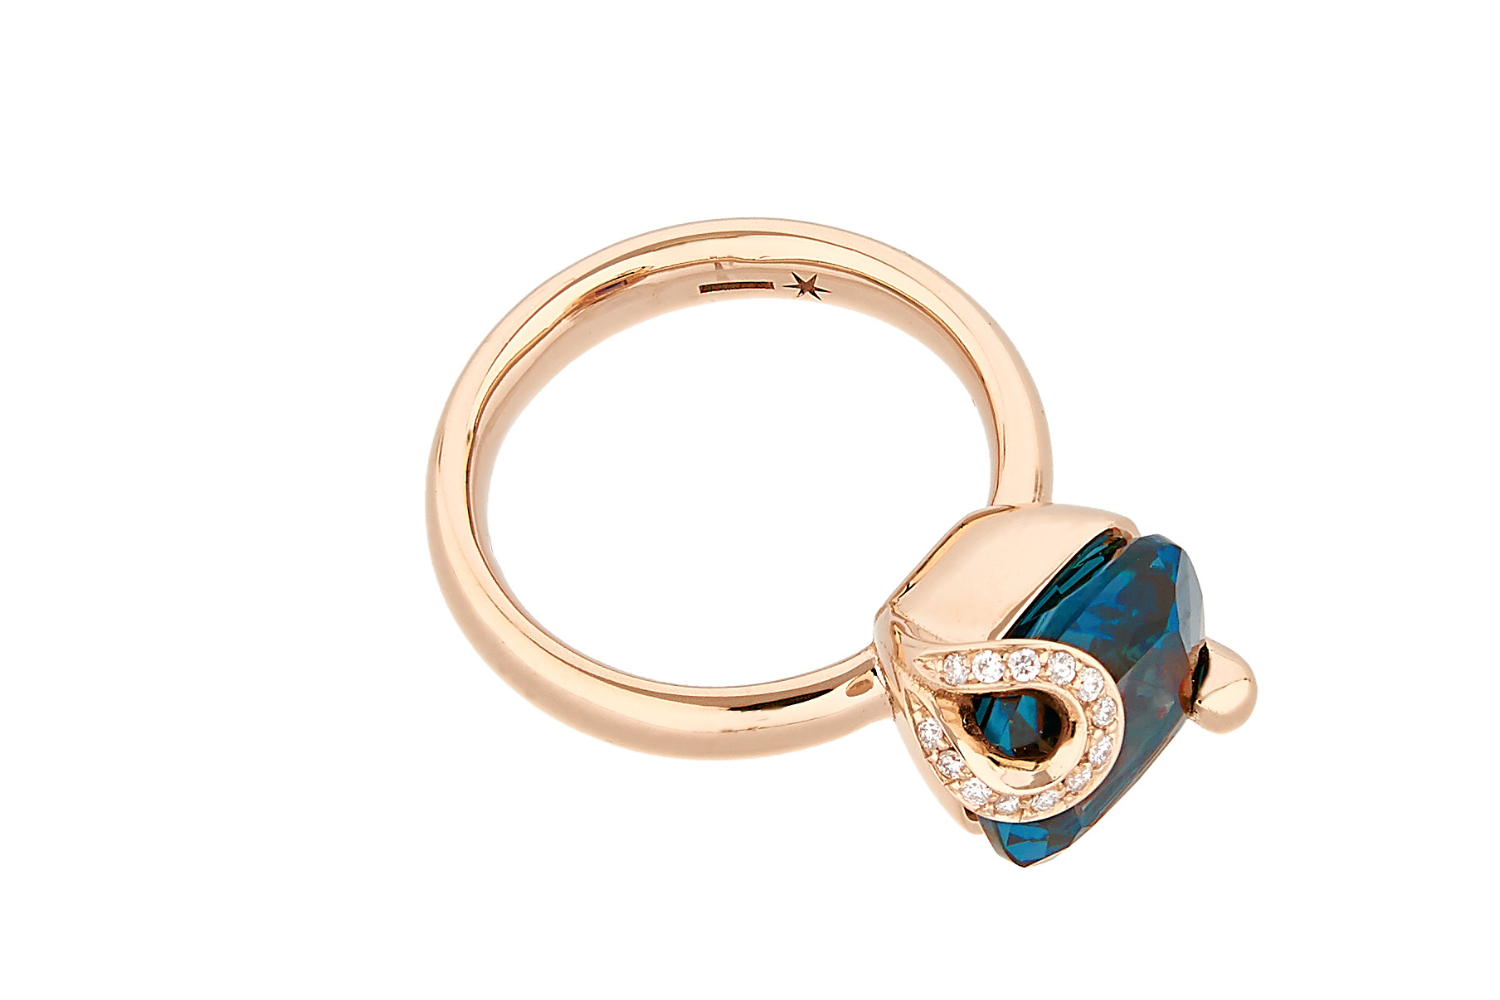 Centoundici Grand Ring, Rosegold mit London Blue Topaz von Grimaldo Firenze online kaufen (Ref. 11-RG03TL-PW-01)